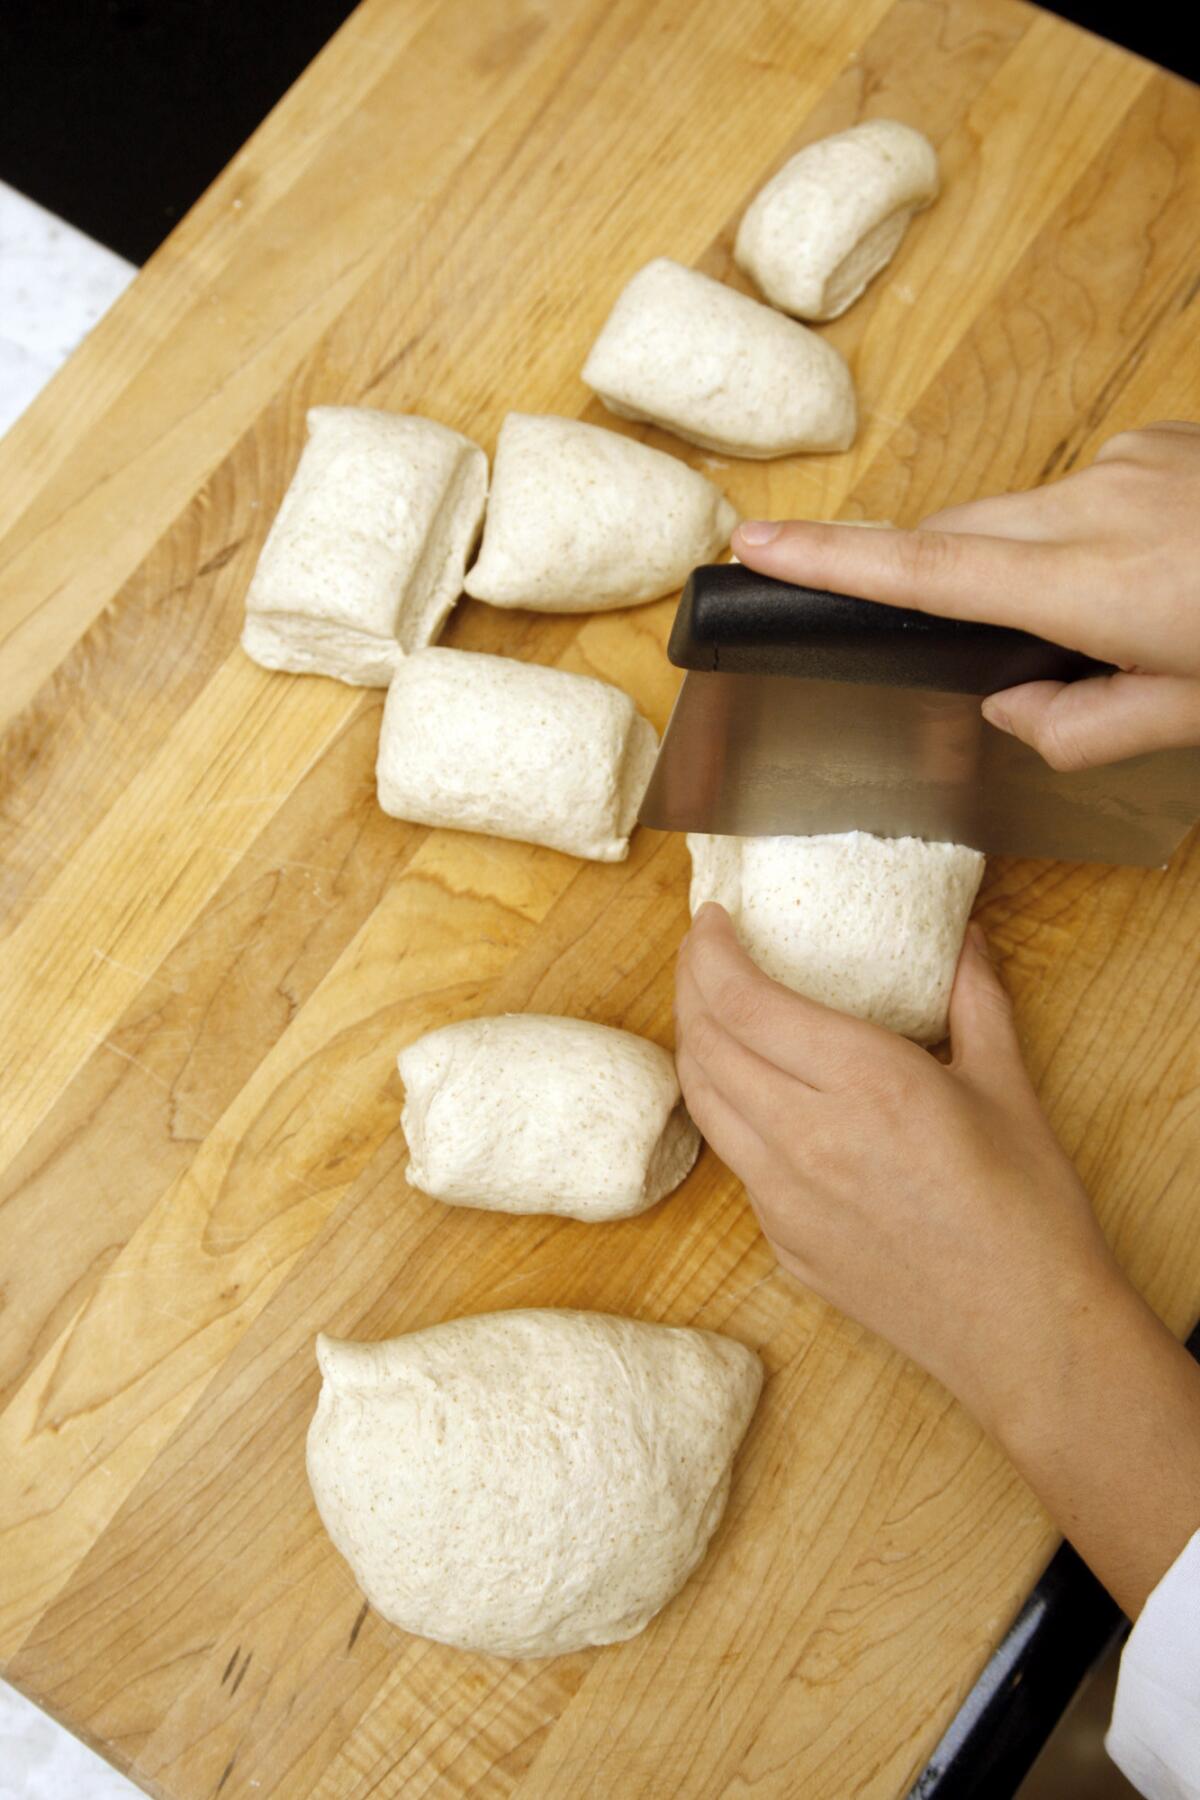 Divide the dough into 12 pieces.